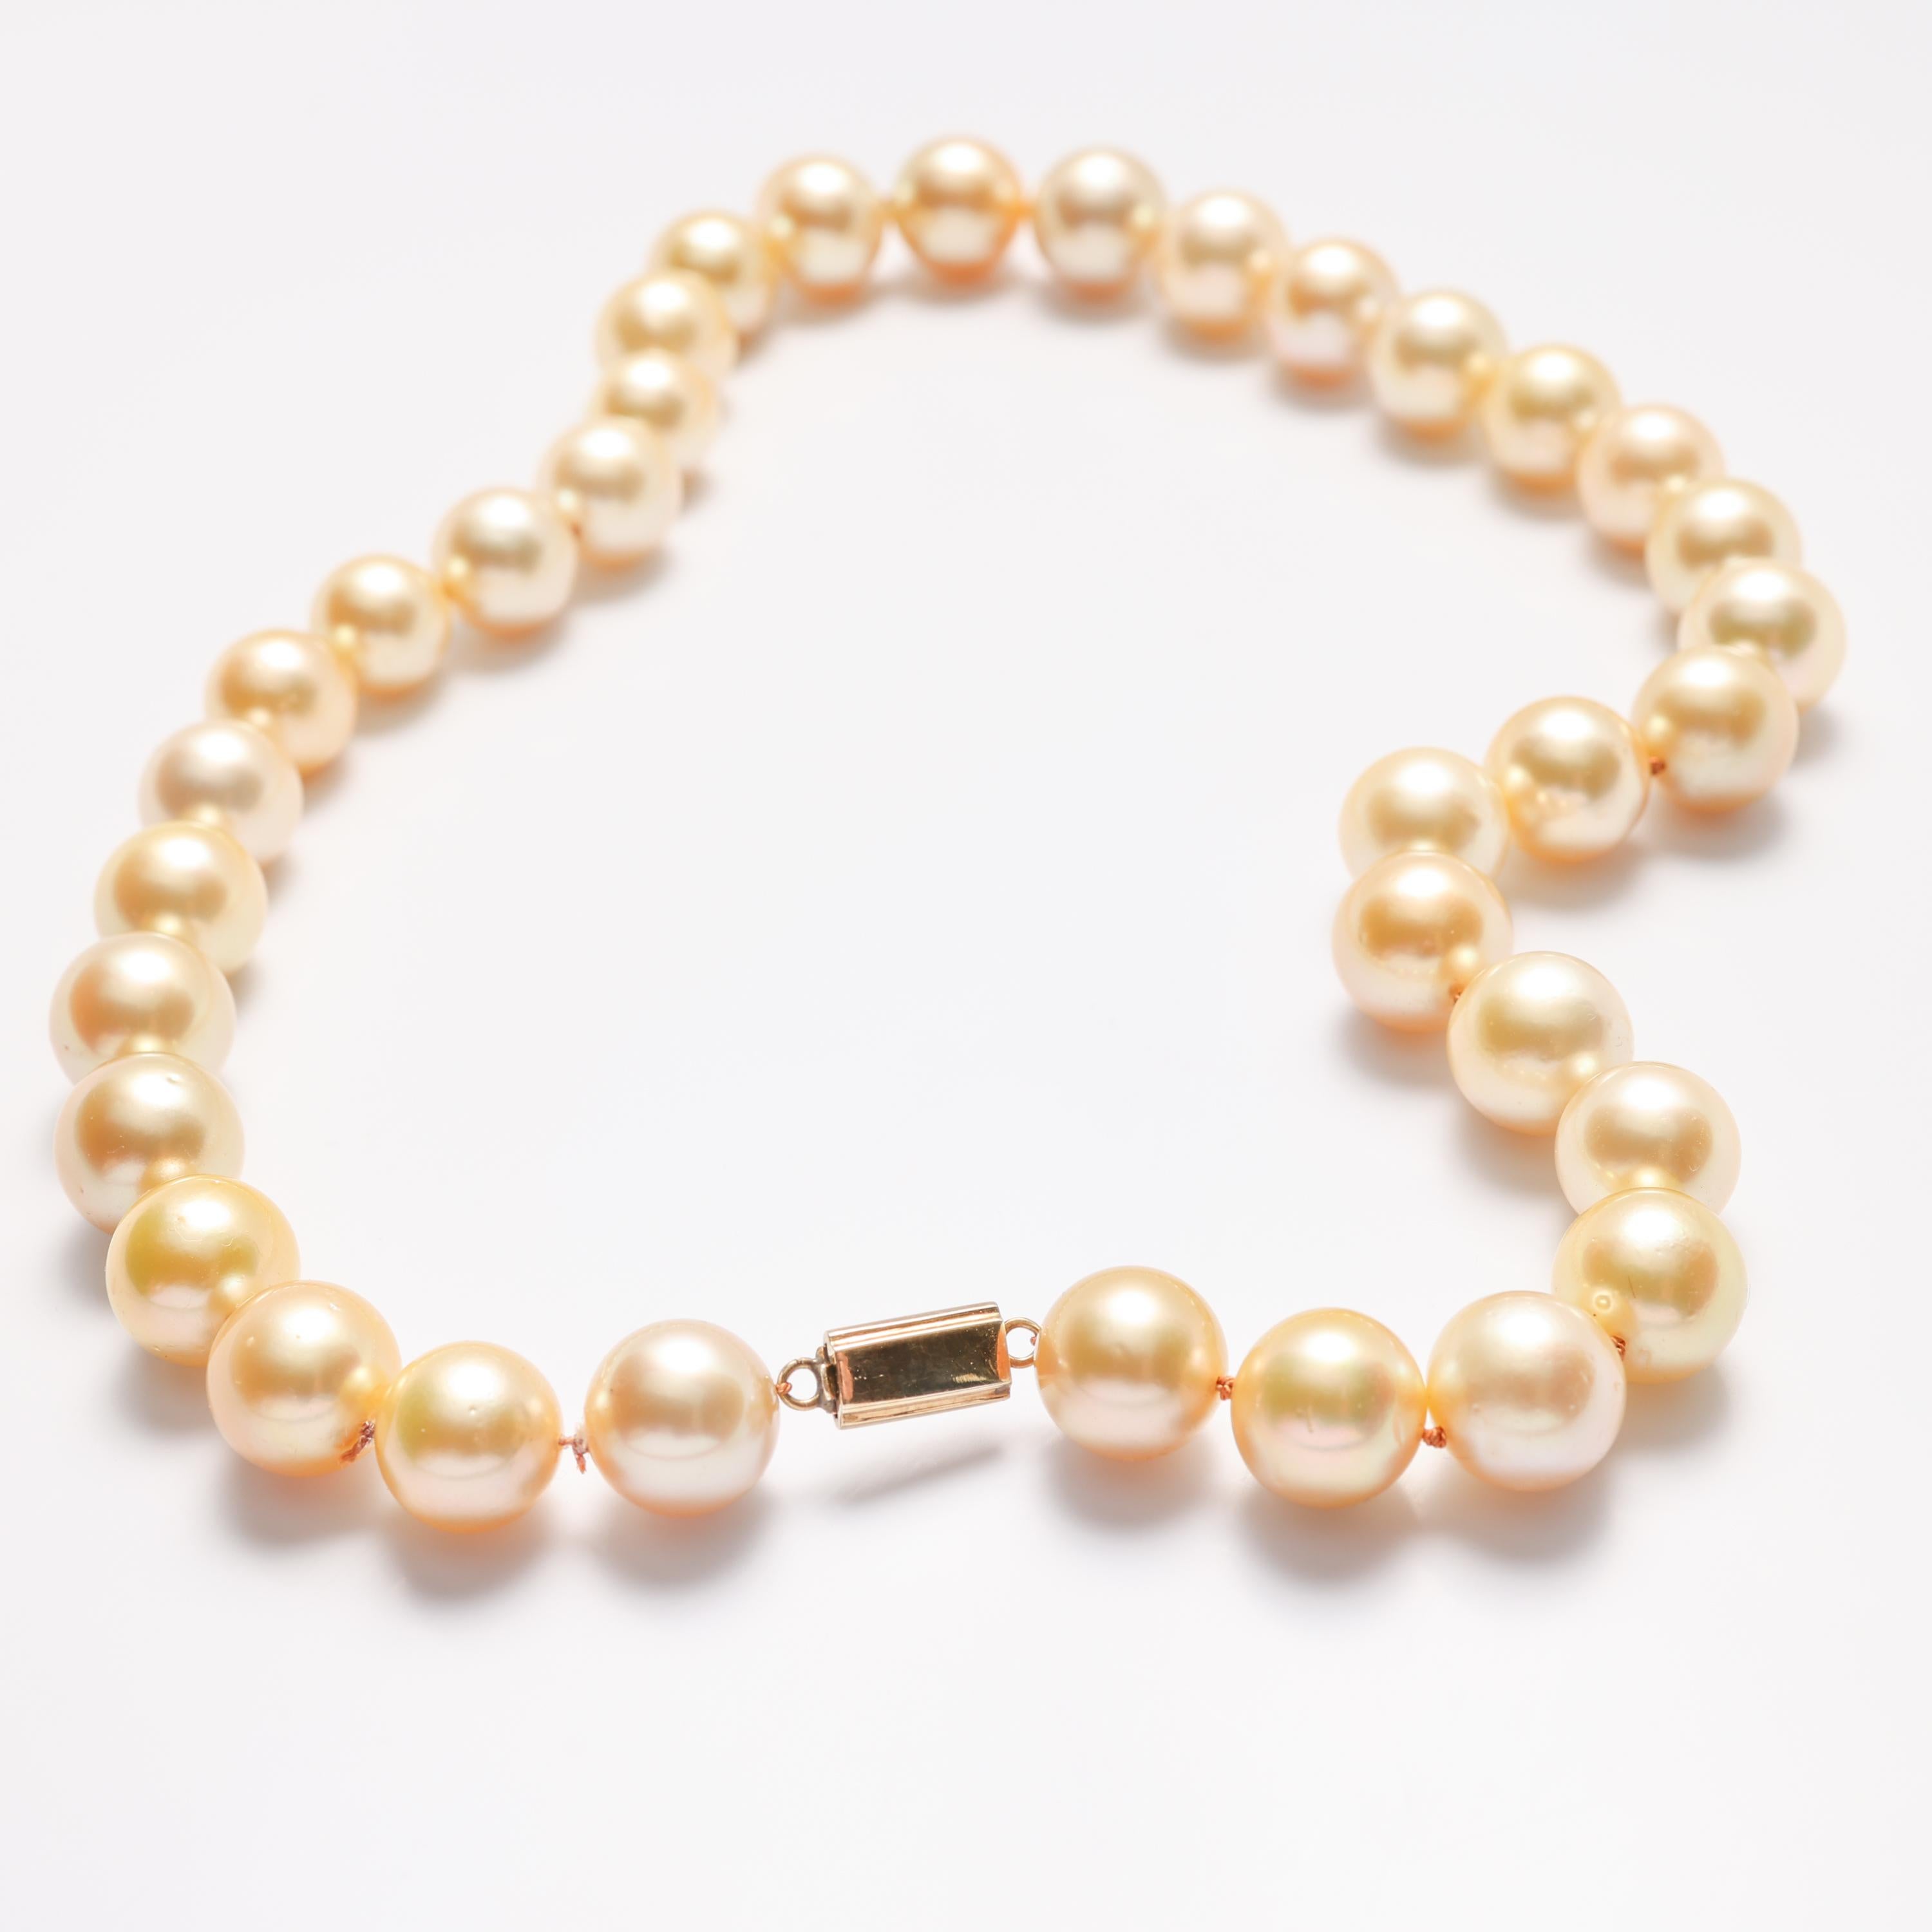 Fünfunddreißig leuchtende und goldene Südseeperlen bilden eine 18-Zoll-Halskette von höchster Schönheit und Luxus. Die schimmernden, prächtigen Perlen sind in ihrer Größe von enormen 11,30 mm bis 13,15 mm abgestuft. Sie sind rund und haben eine